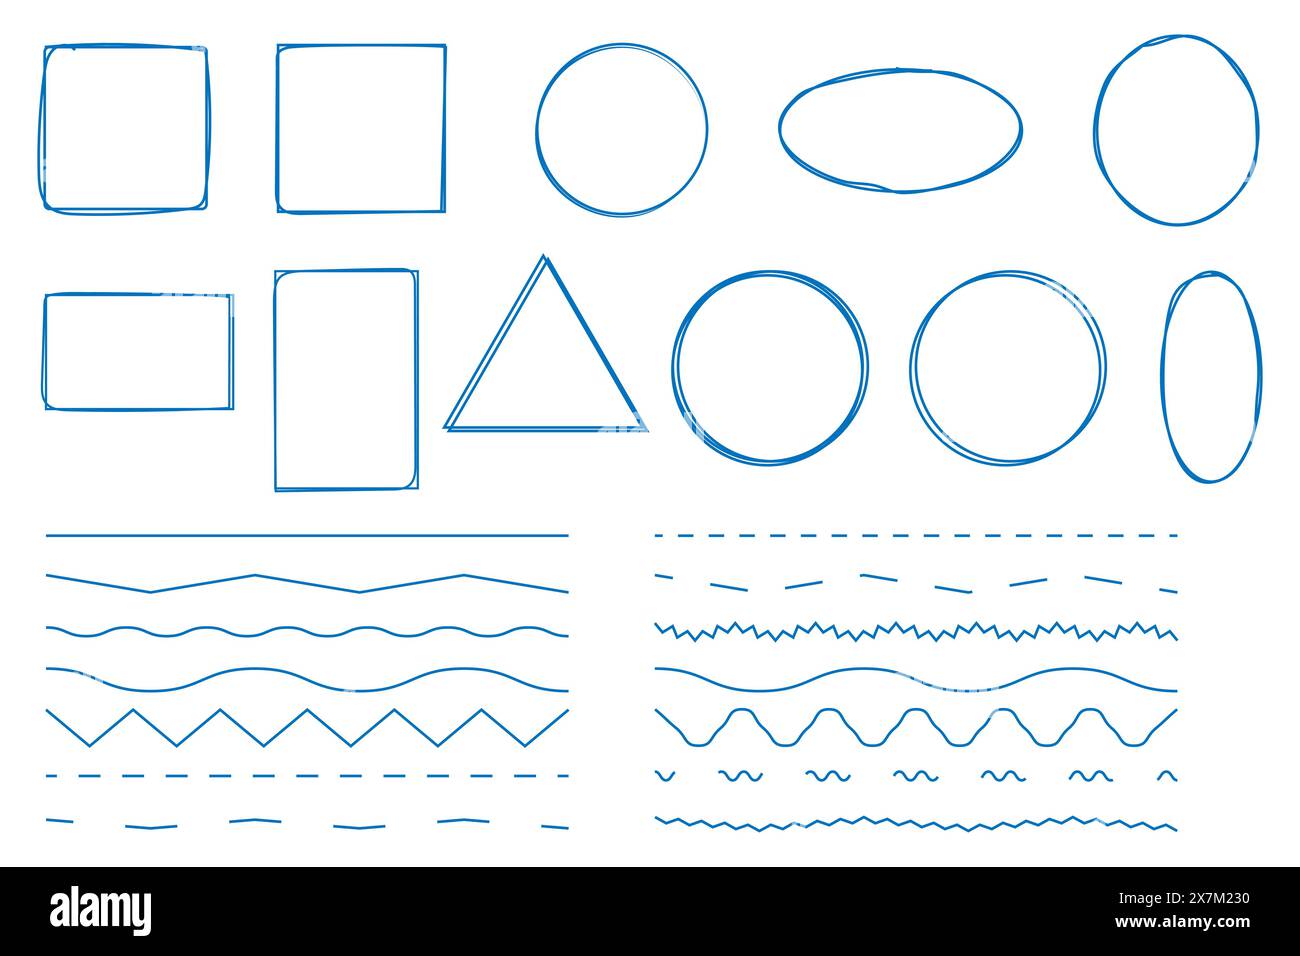 Dessiné à la main différents cadres et lignes en zigzag dans un croquis de style doodle des éléments graphiques. Illustration de Vecteur